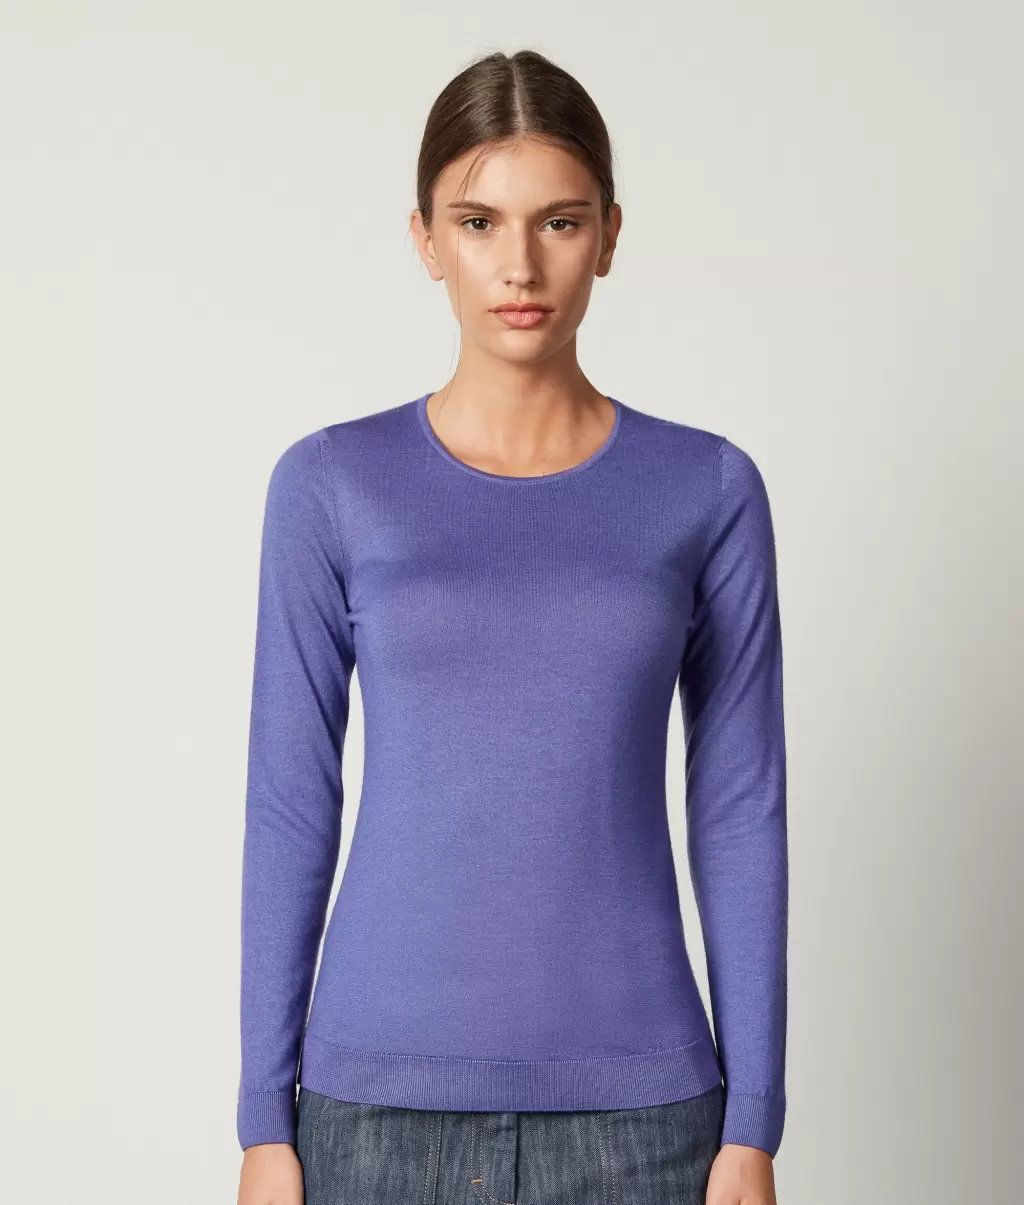 Swetry Z Okrągłym Dekoltem Falconeri Pulower Z Kaszmiru Ultrafine Kobieta Violet - 1